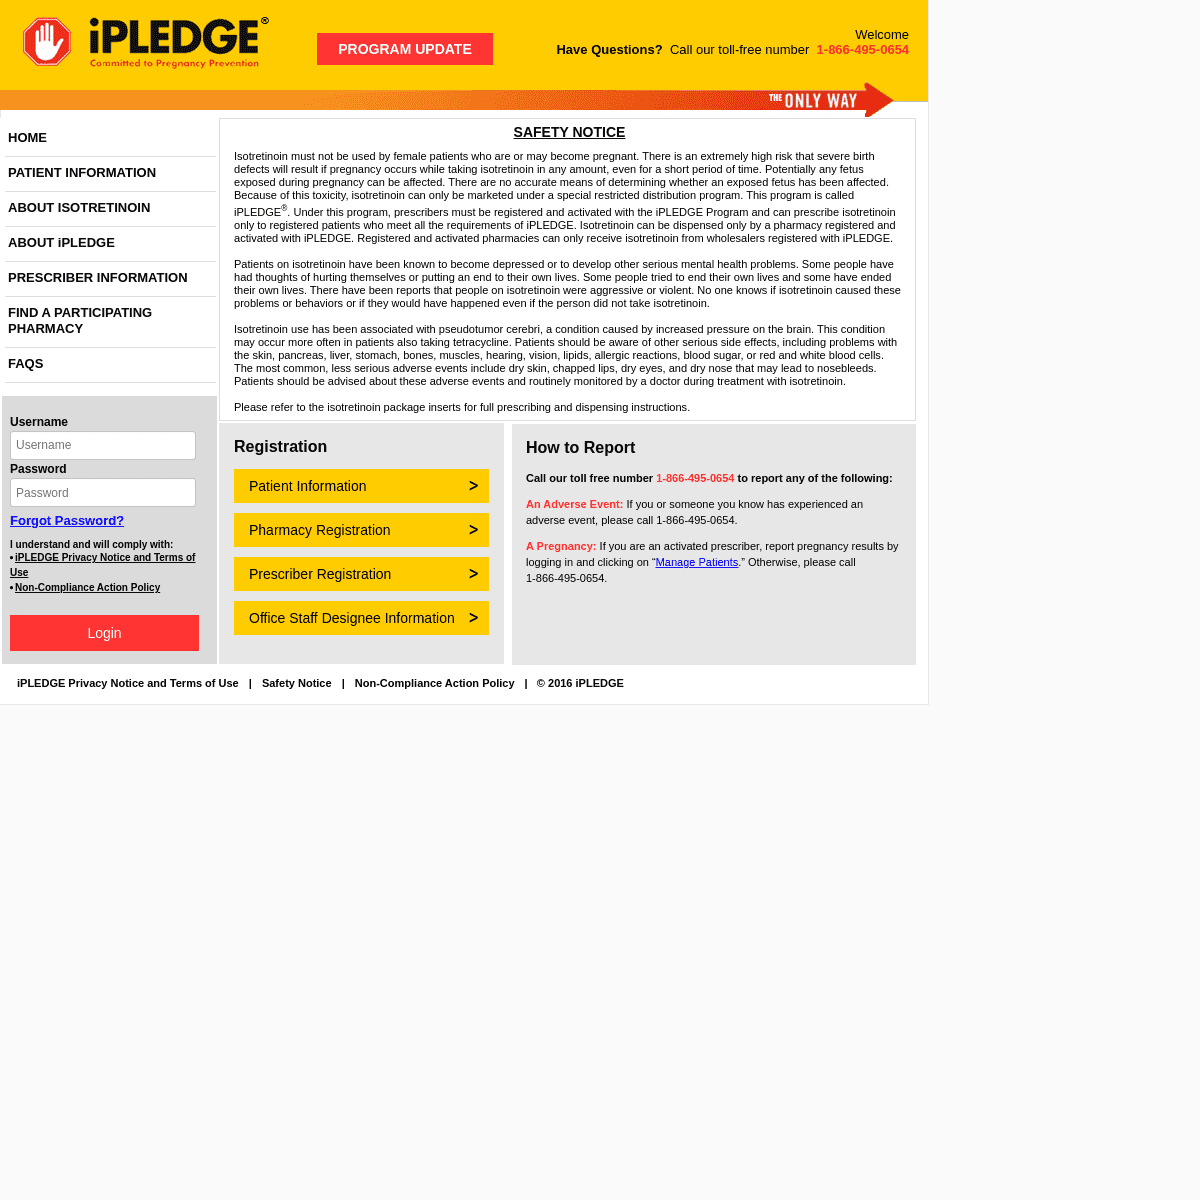 A complete backup of https://ipledgeprogram.com